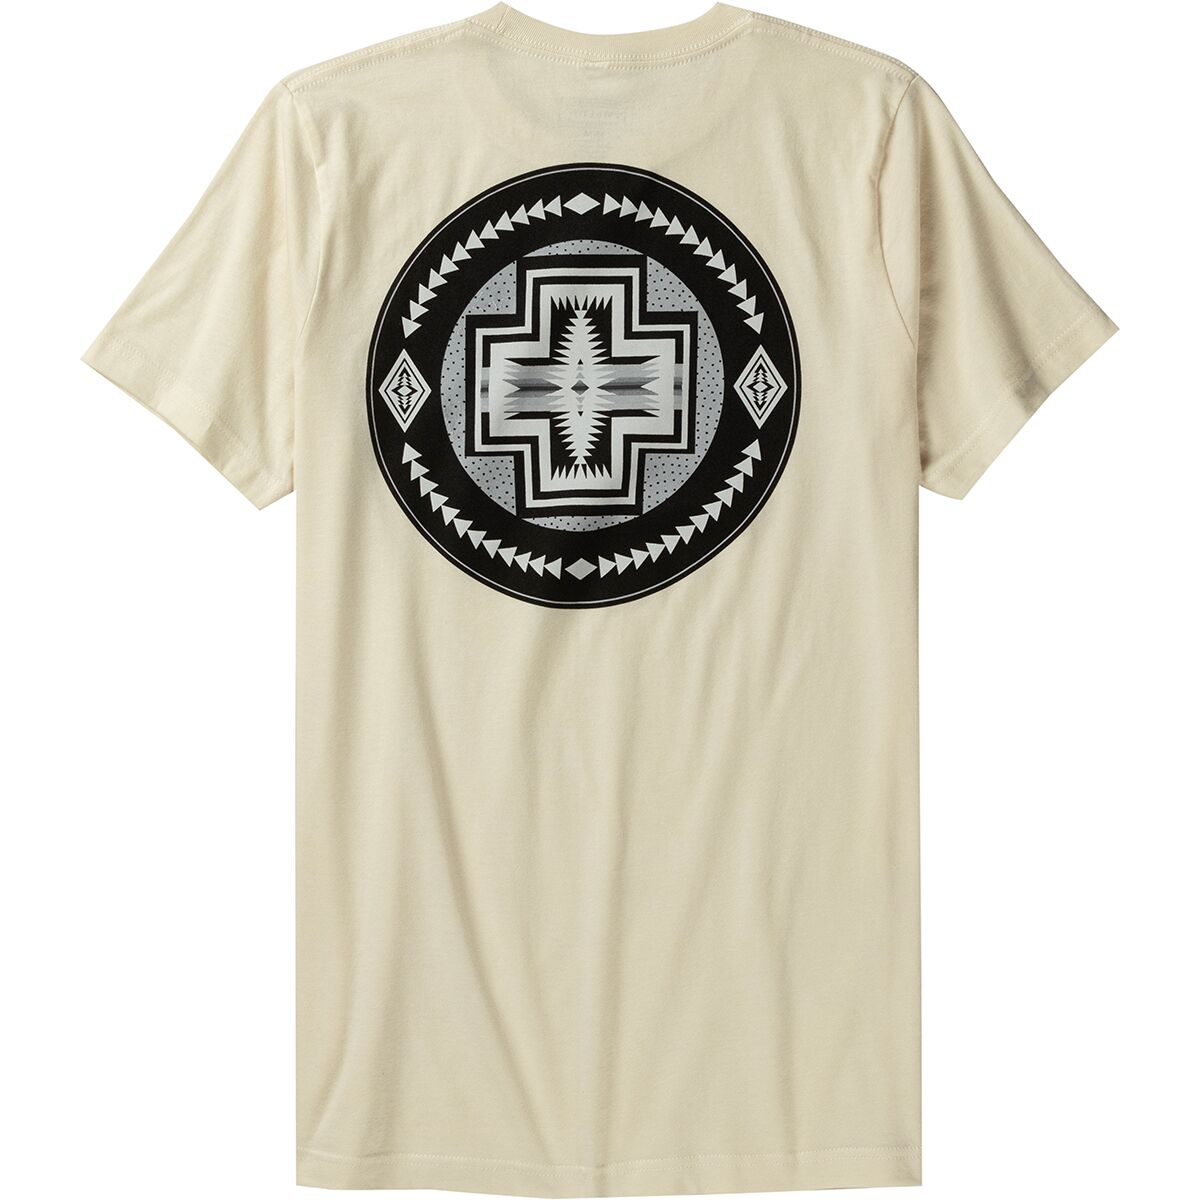 Harding 150th Anniversary Graphic T-Shirt - Men